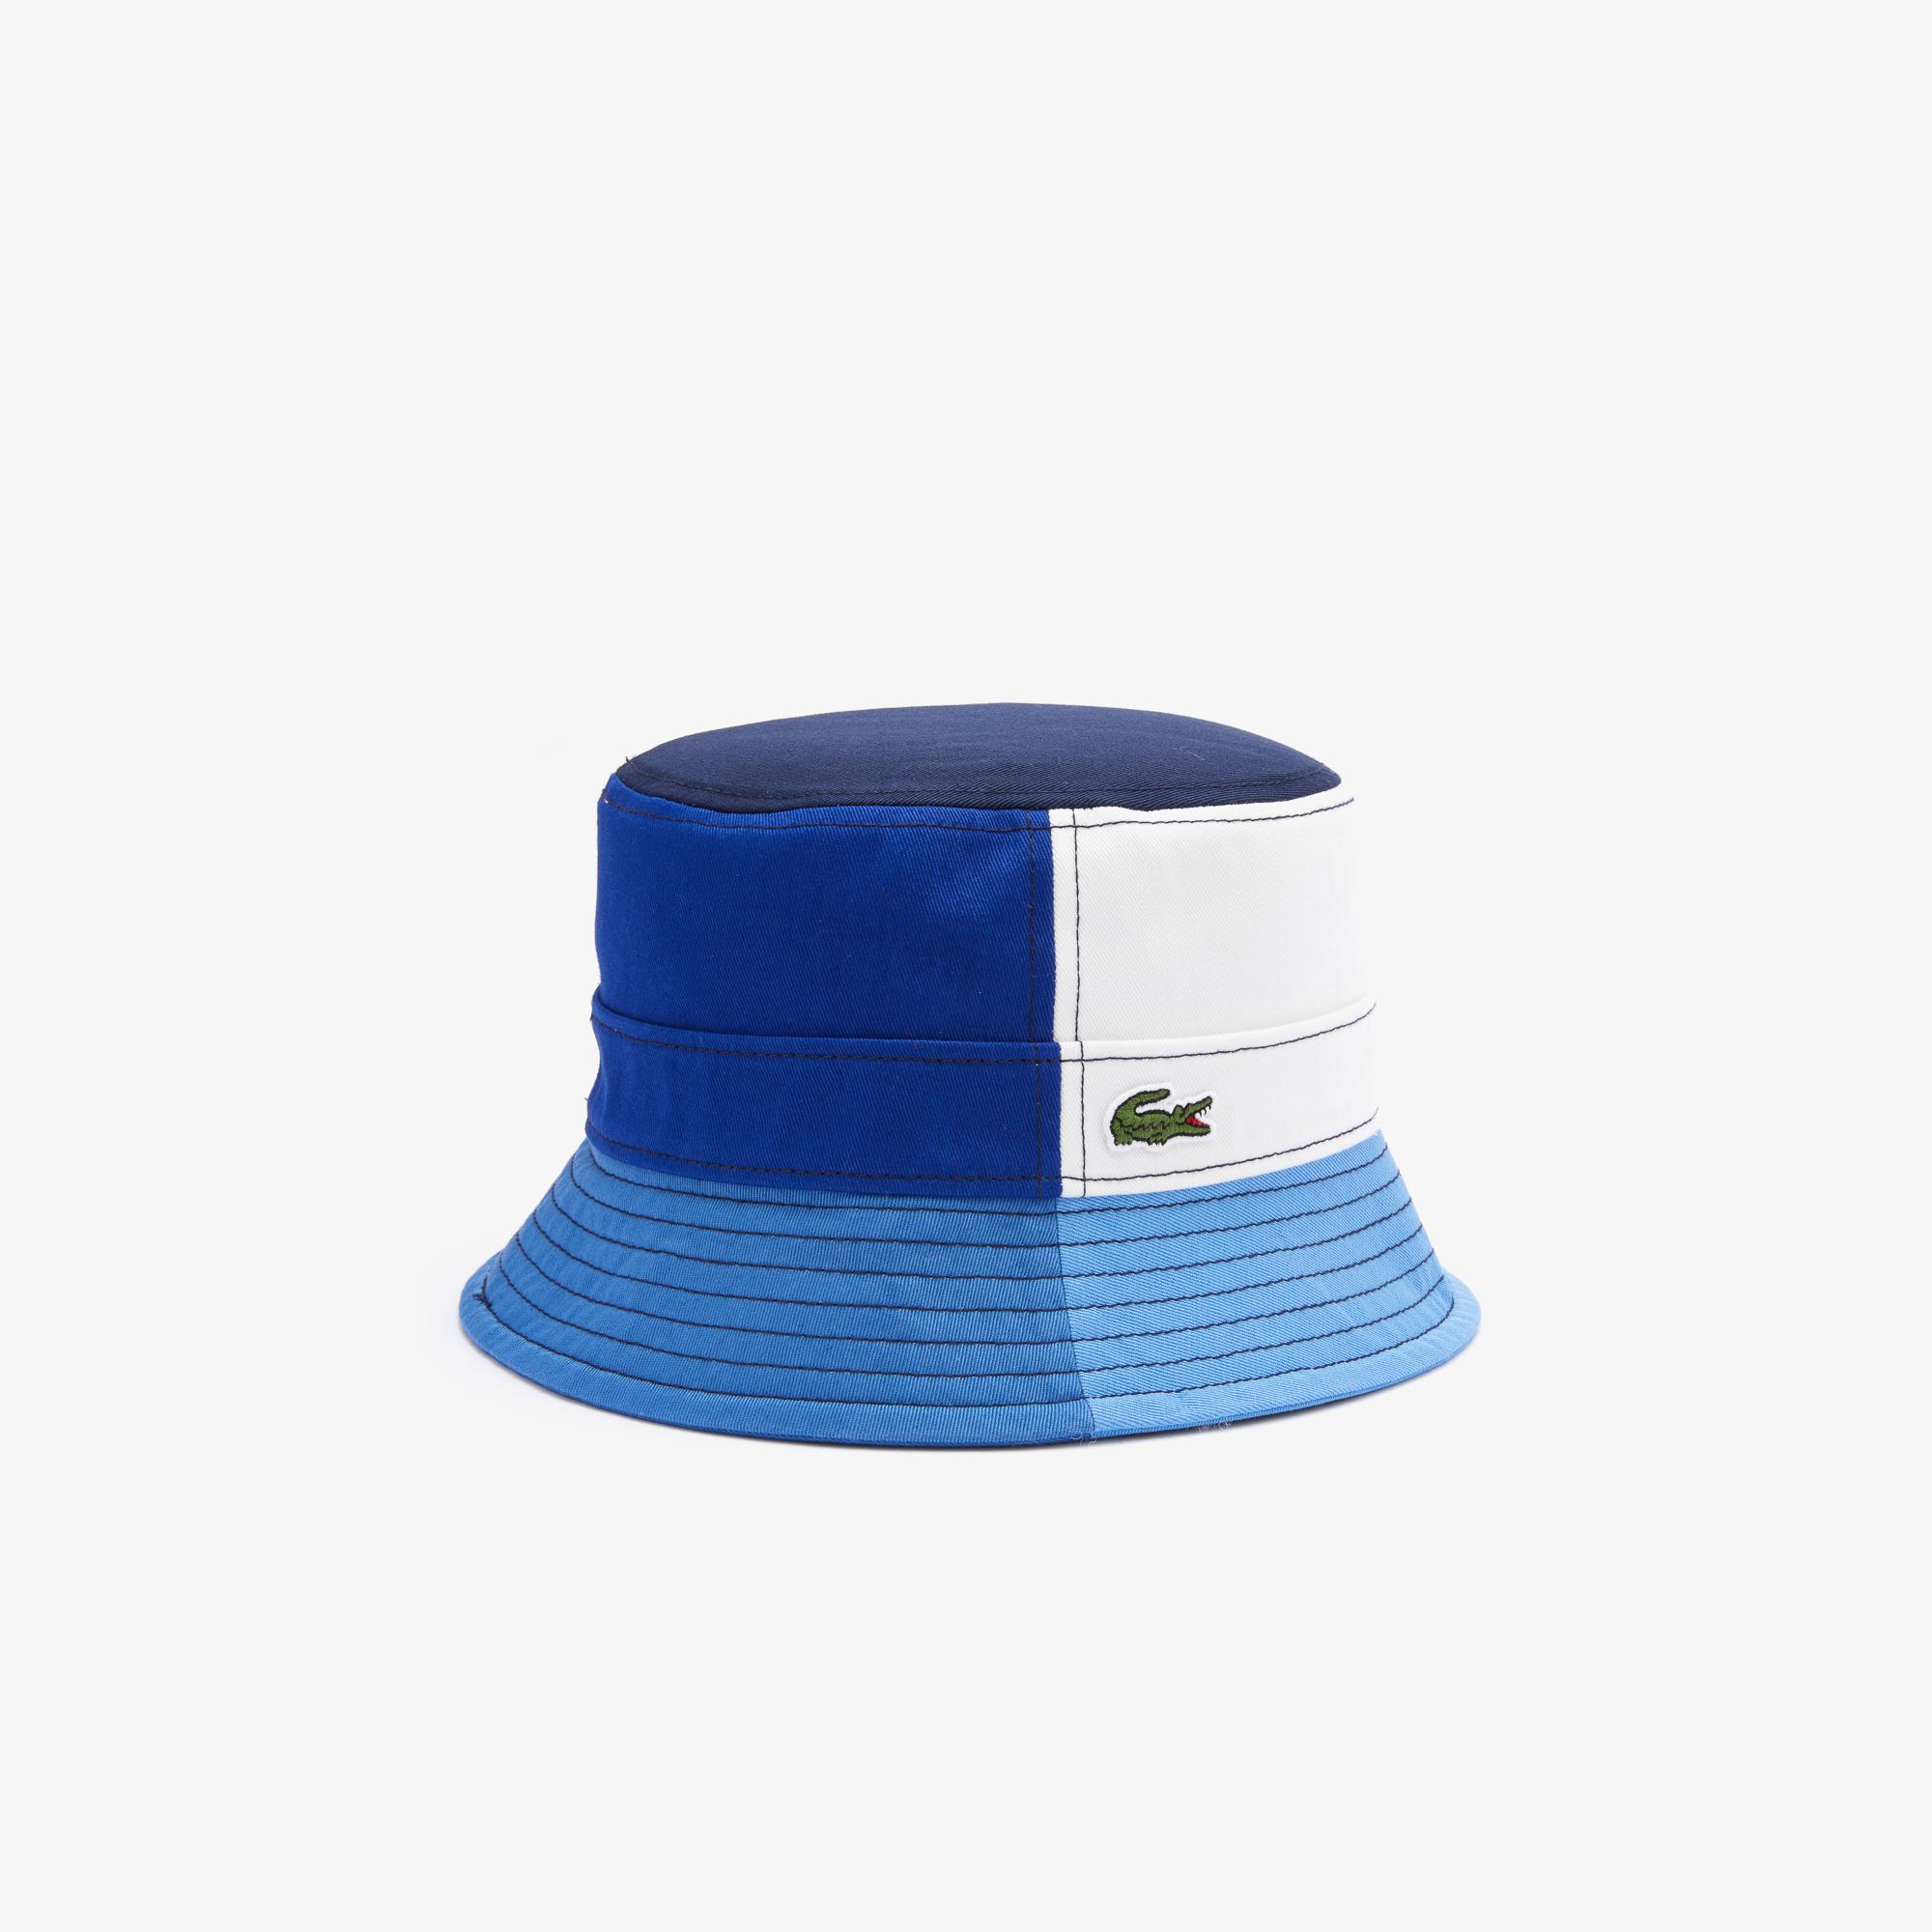 Lacoste Kadın Renk Bloklu Lacivert Şapka. 4